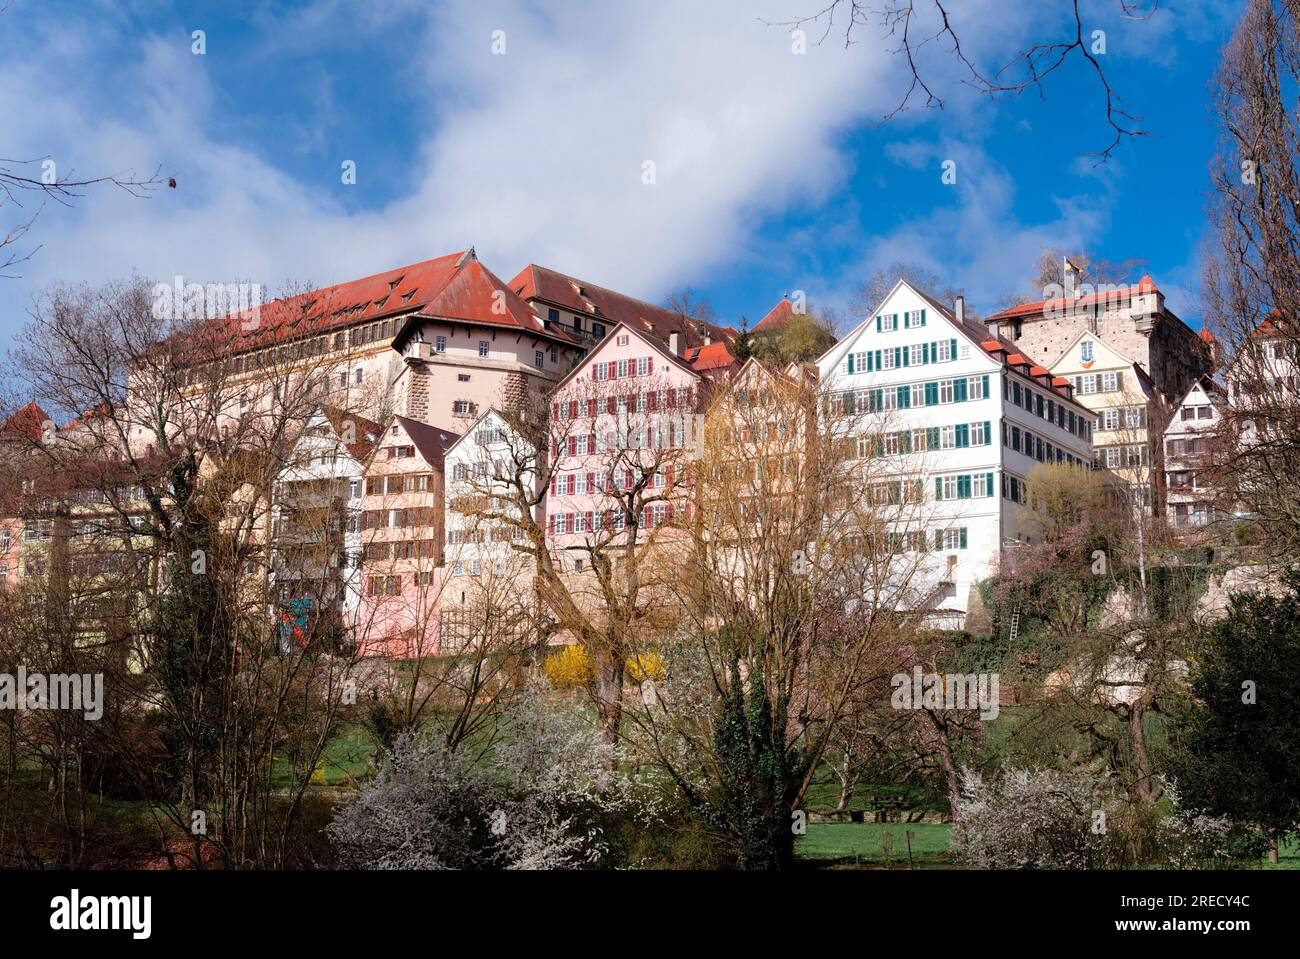 Tübingen Altstadt with castle Stock Photo